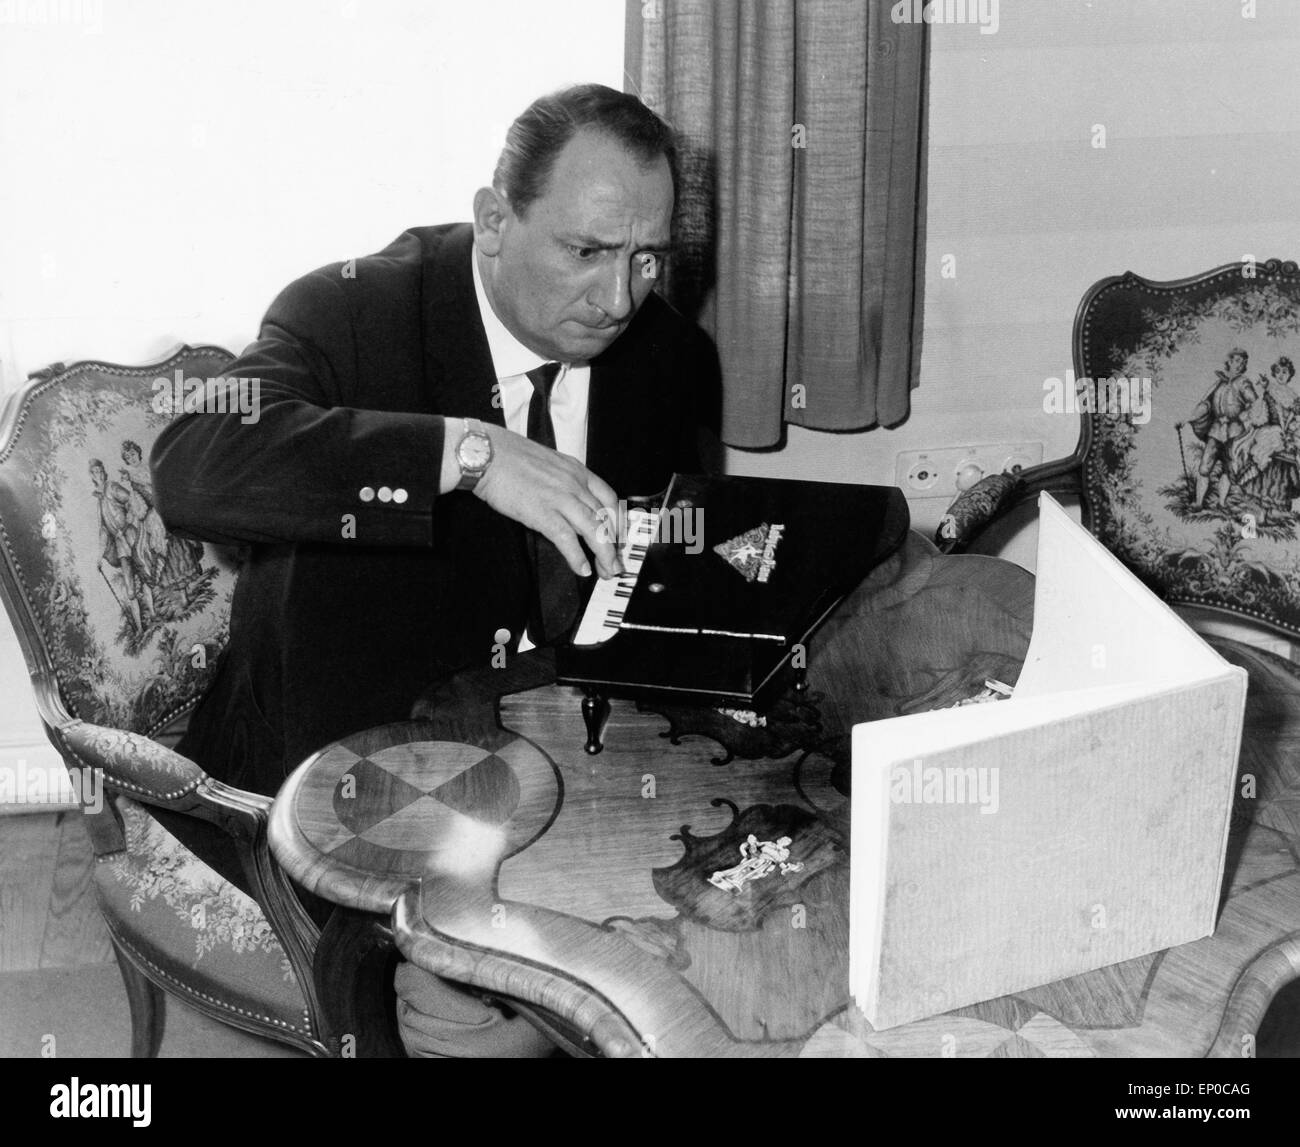 Deutscher Hörfunk- und Fernsehreporter Hermann Rockmann übet verbissen an einem Spielzeugklavier, Ende 1950er Jahre. German r Stock Photo